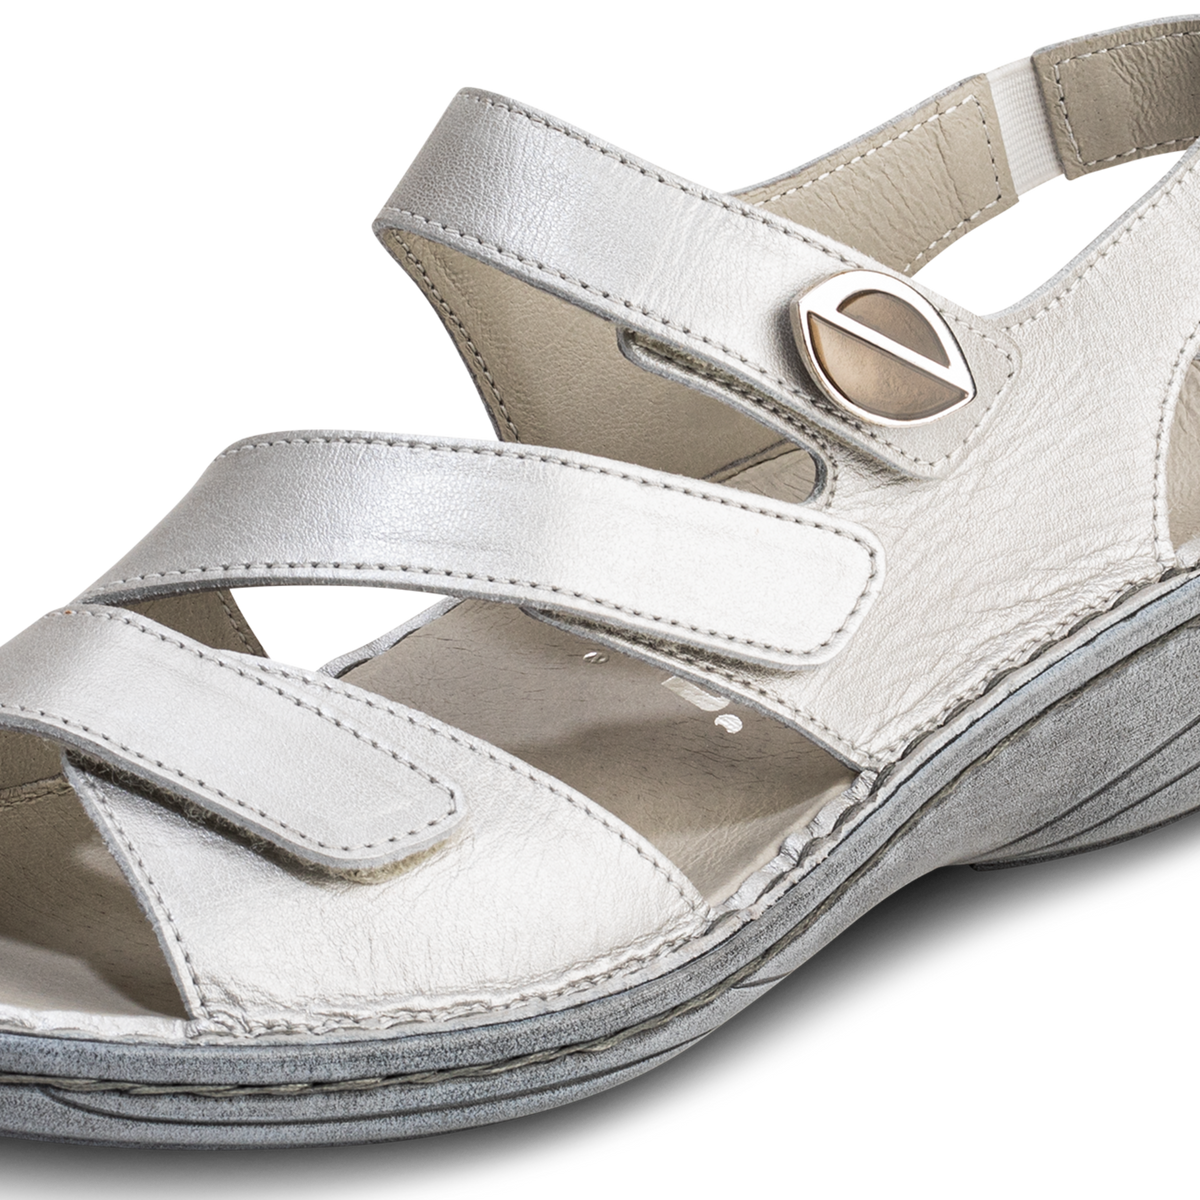 flatterende sandaal van zacht nappa gebroken wit/metallic